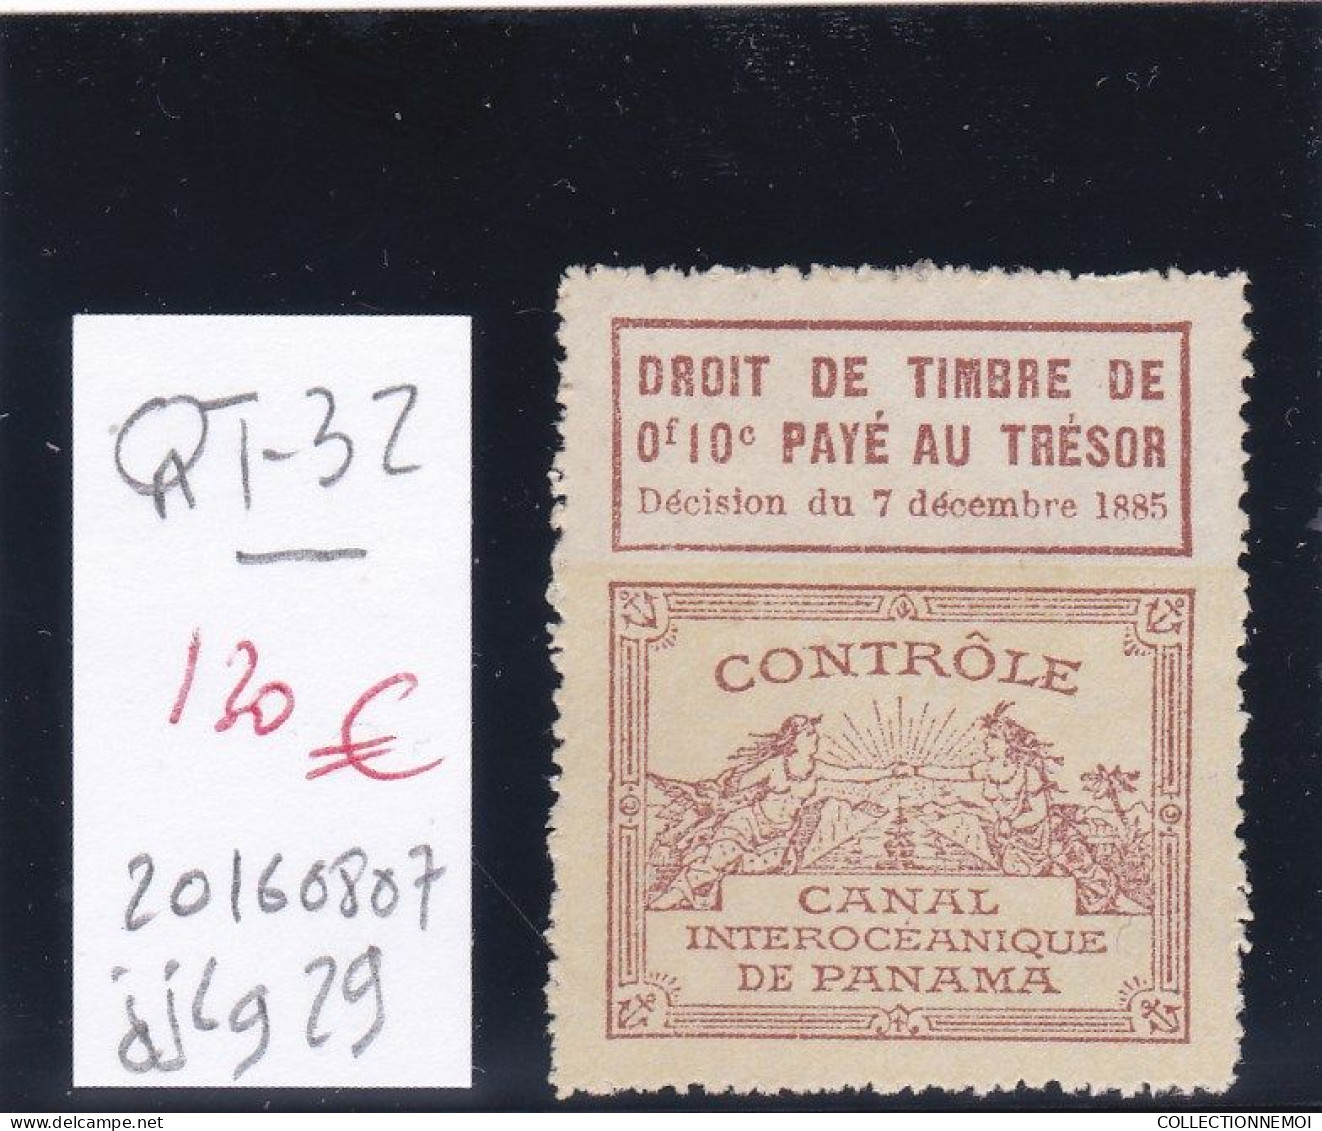 TRES GRANDE RARETE DANS LES FISCAUX ((canal De Panama)) - Stamps